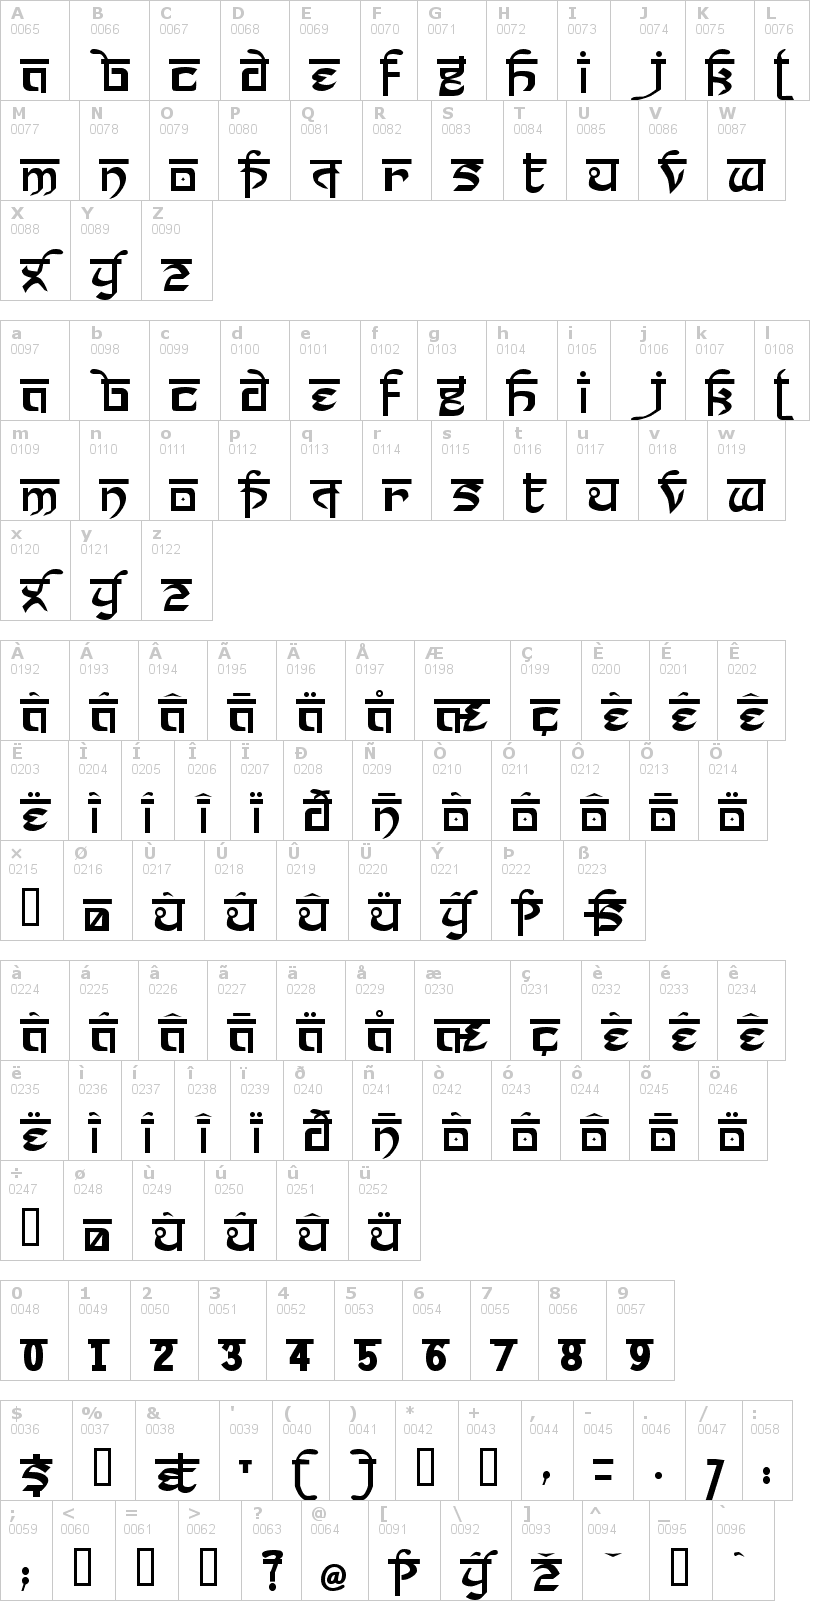 Lettere dell'alfabeto del font prakrta con le quali è possibile realizzare adesivi prespaziati